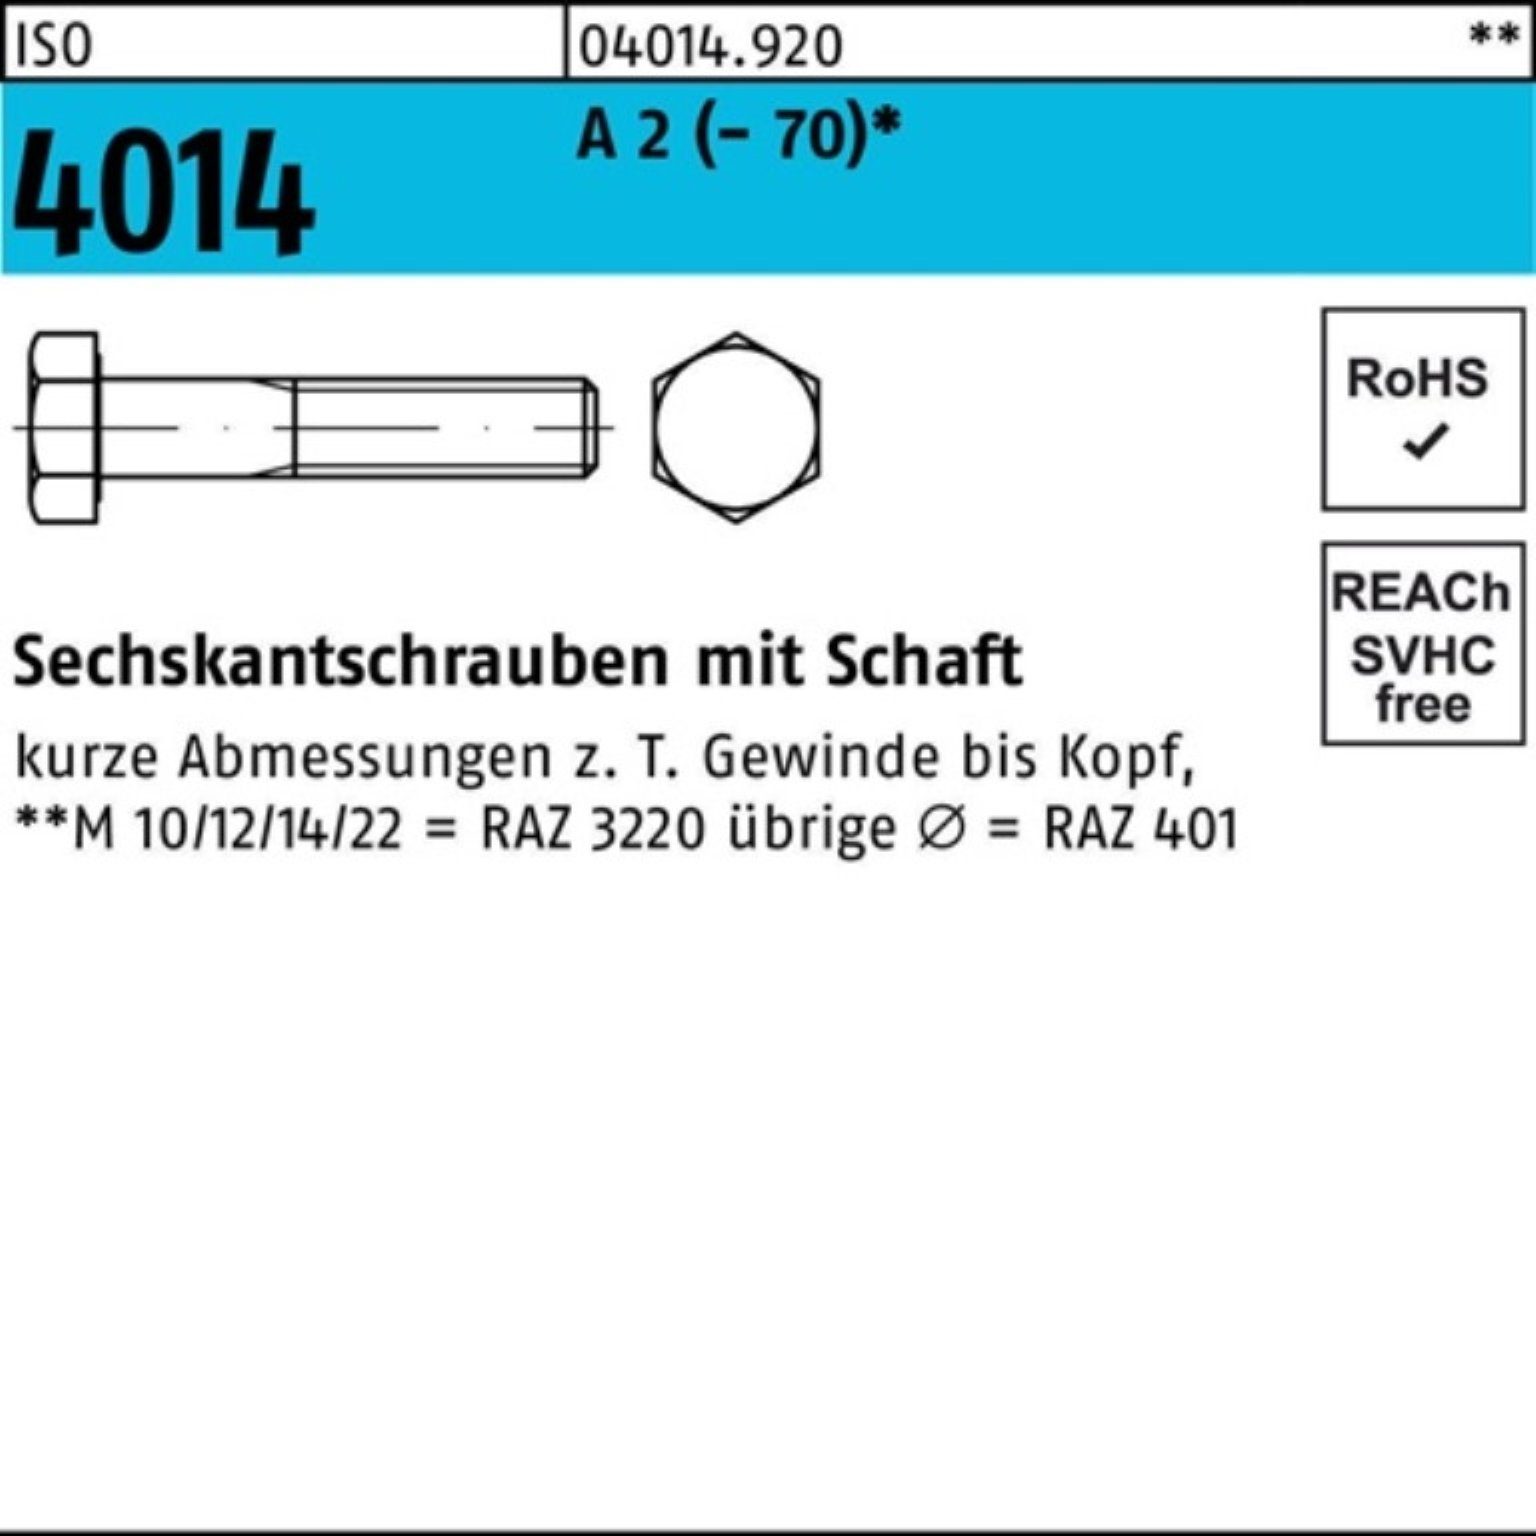 Bufab Sechskantschraube 100er Pack Sechskantschraube ISO 4014 Schaft M5x 70 A 2 (70) 100 St